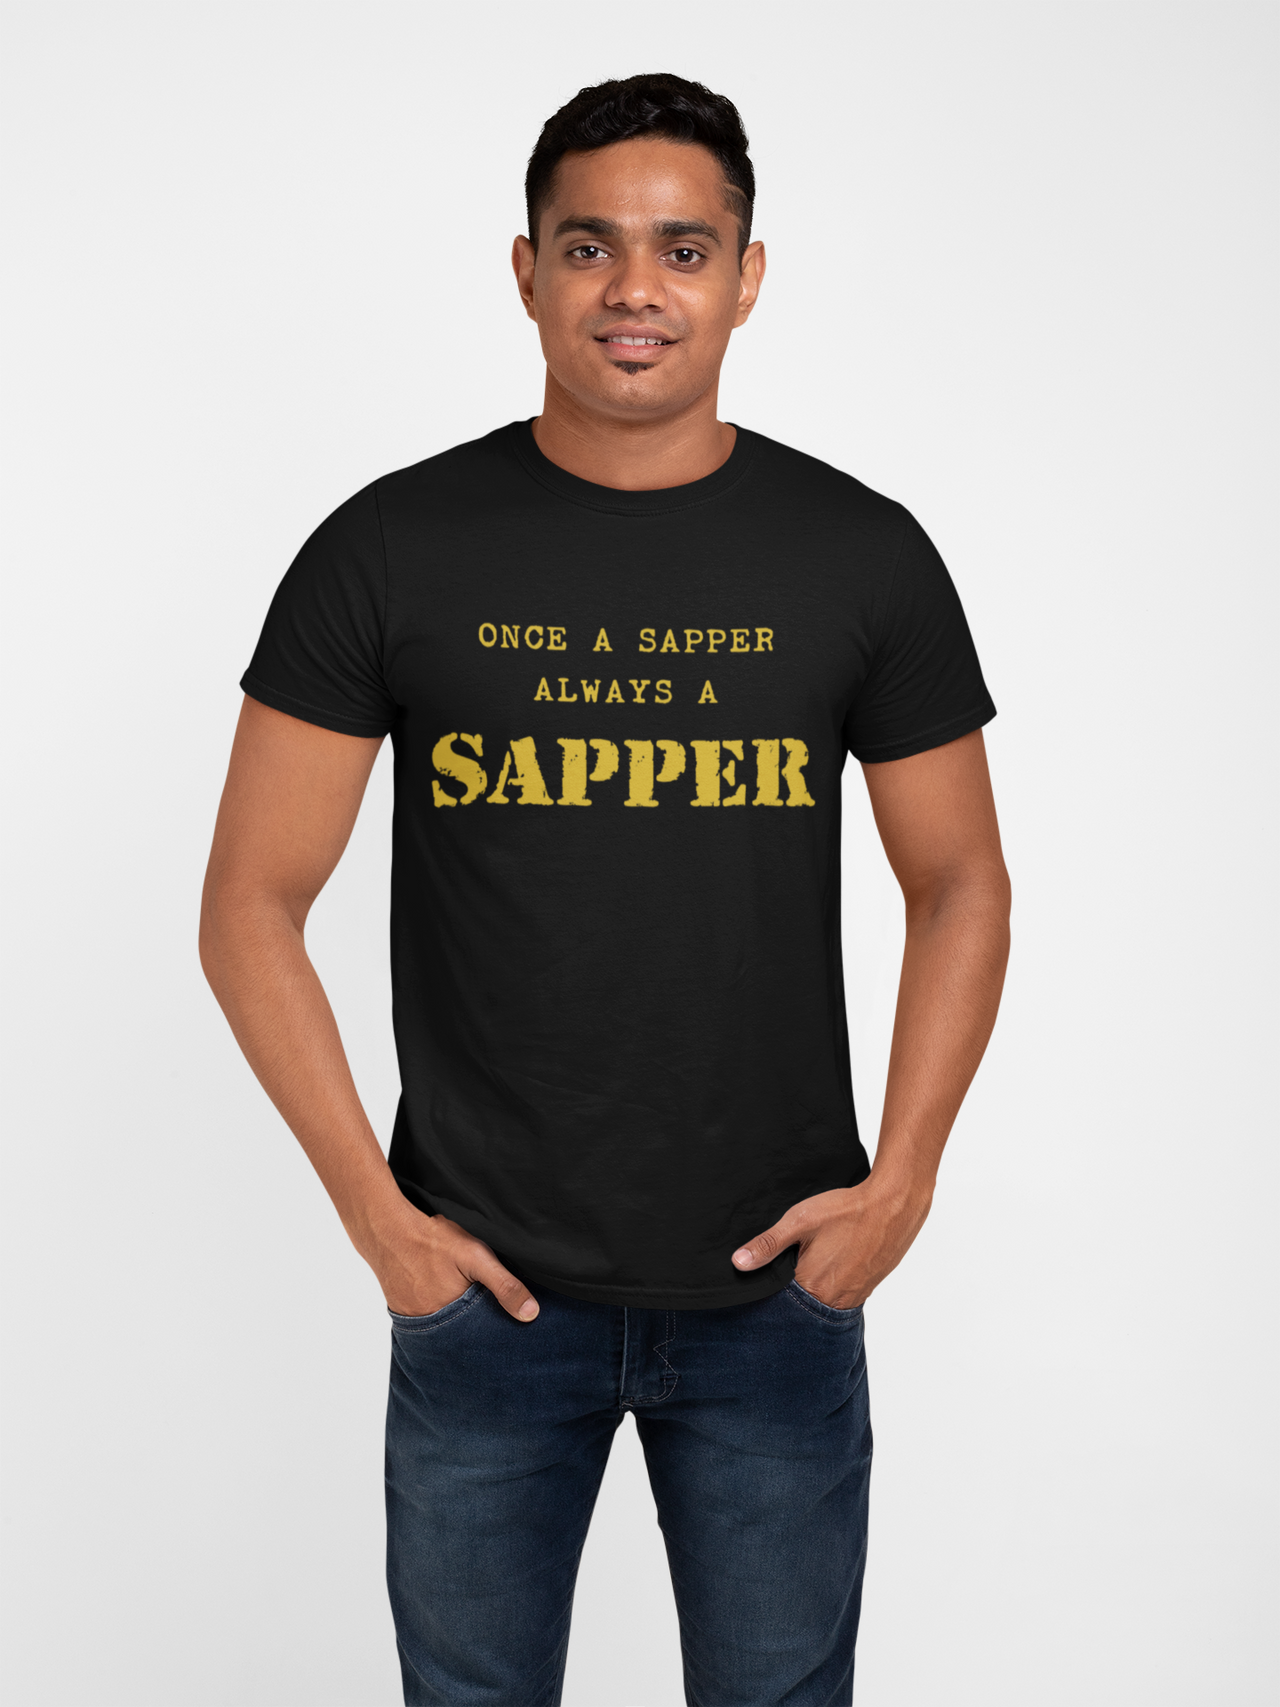 Sapper T-shirt - Once a Sapper, Always a Sapper (Men)